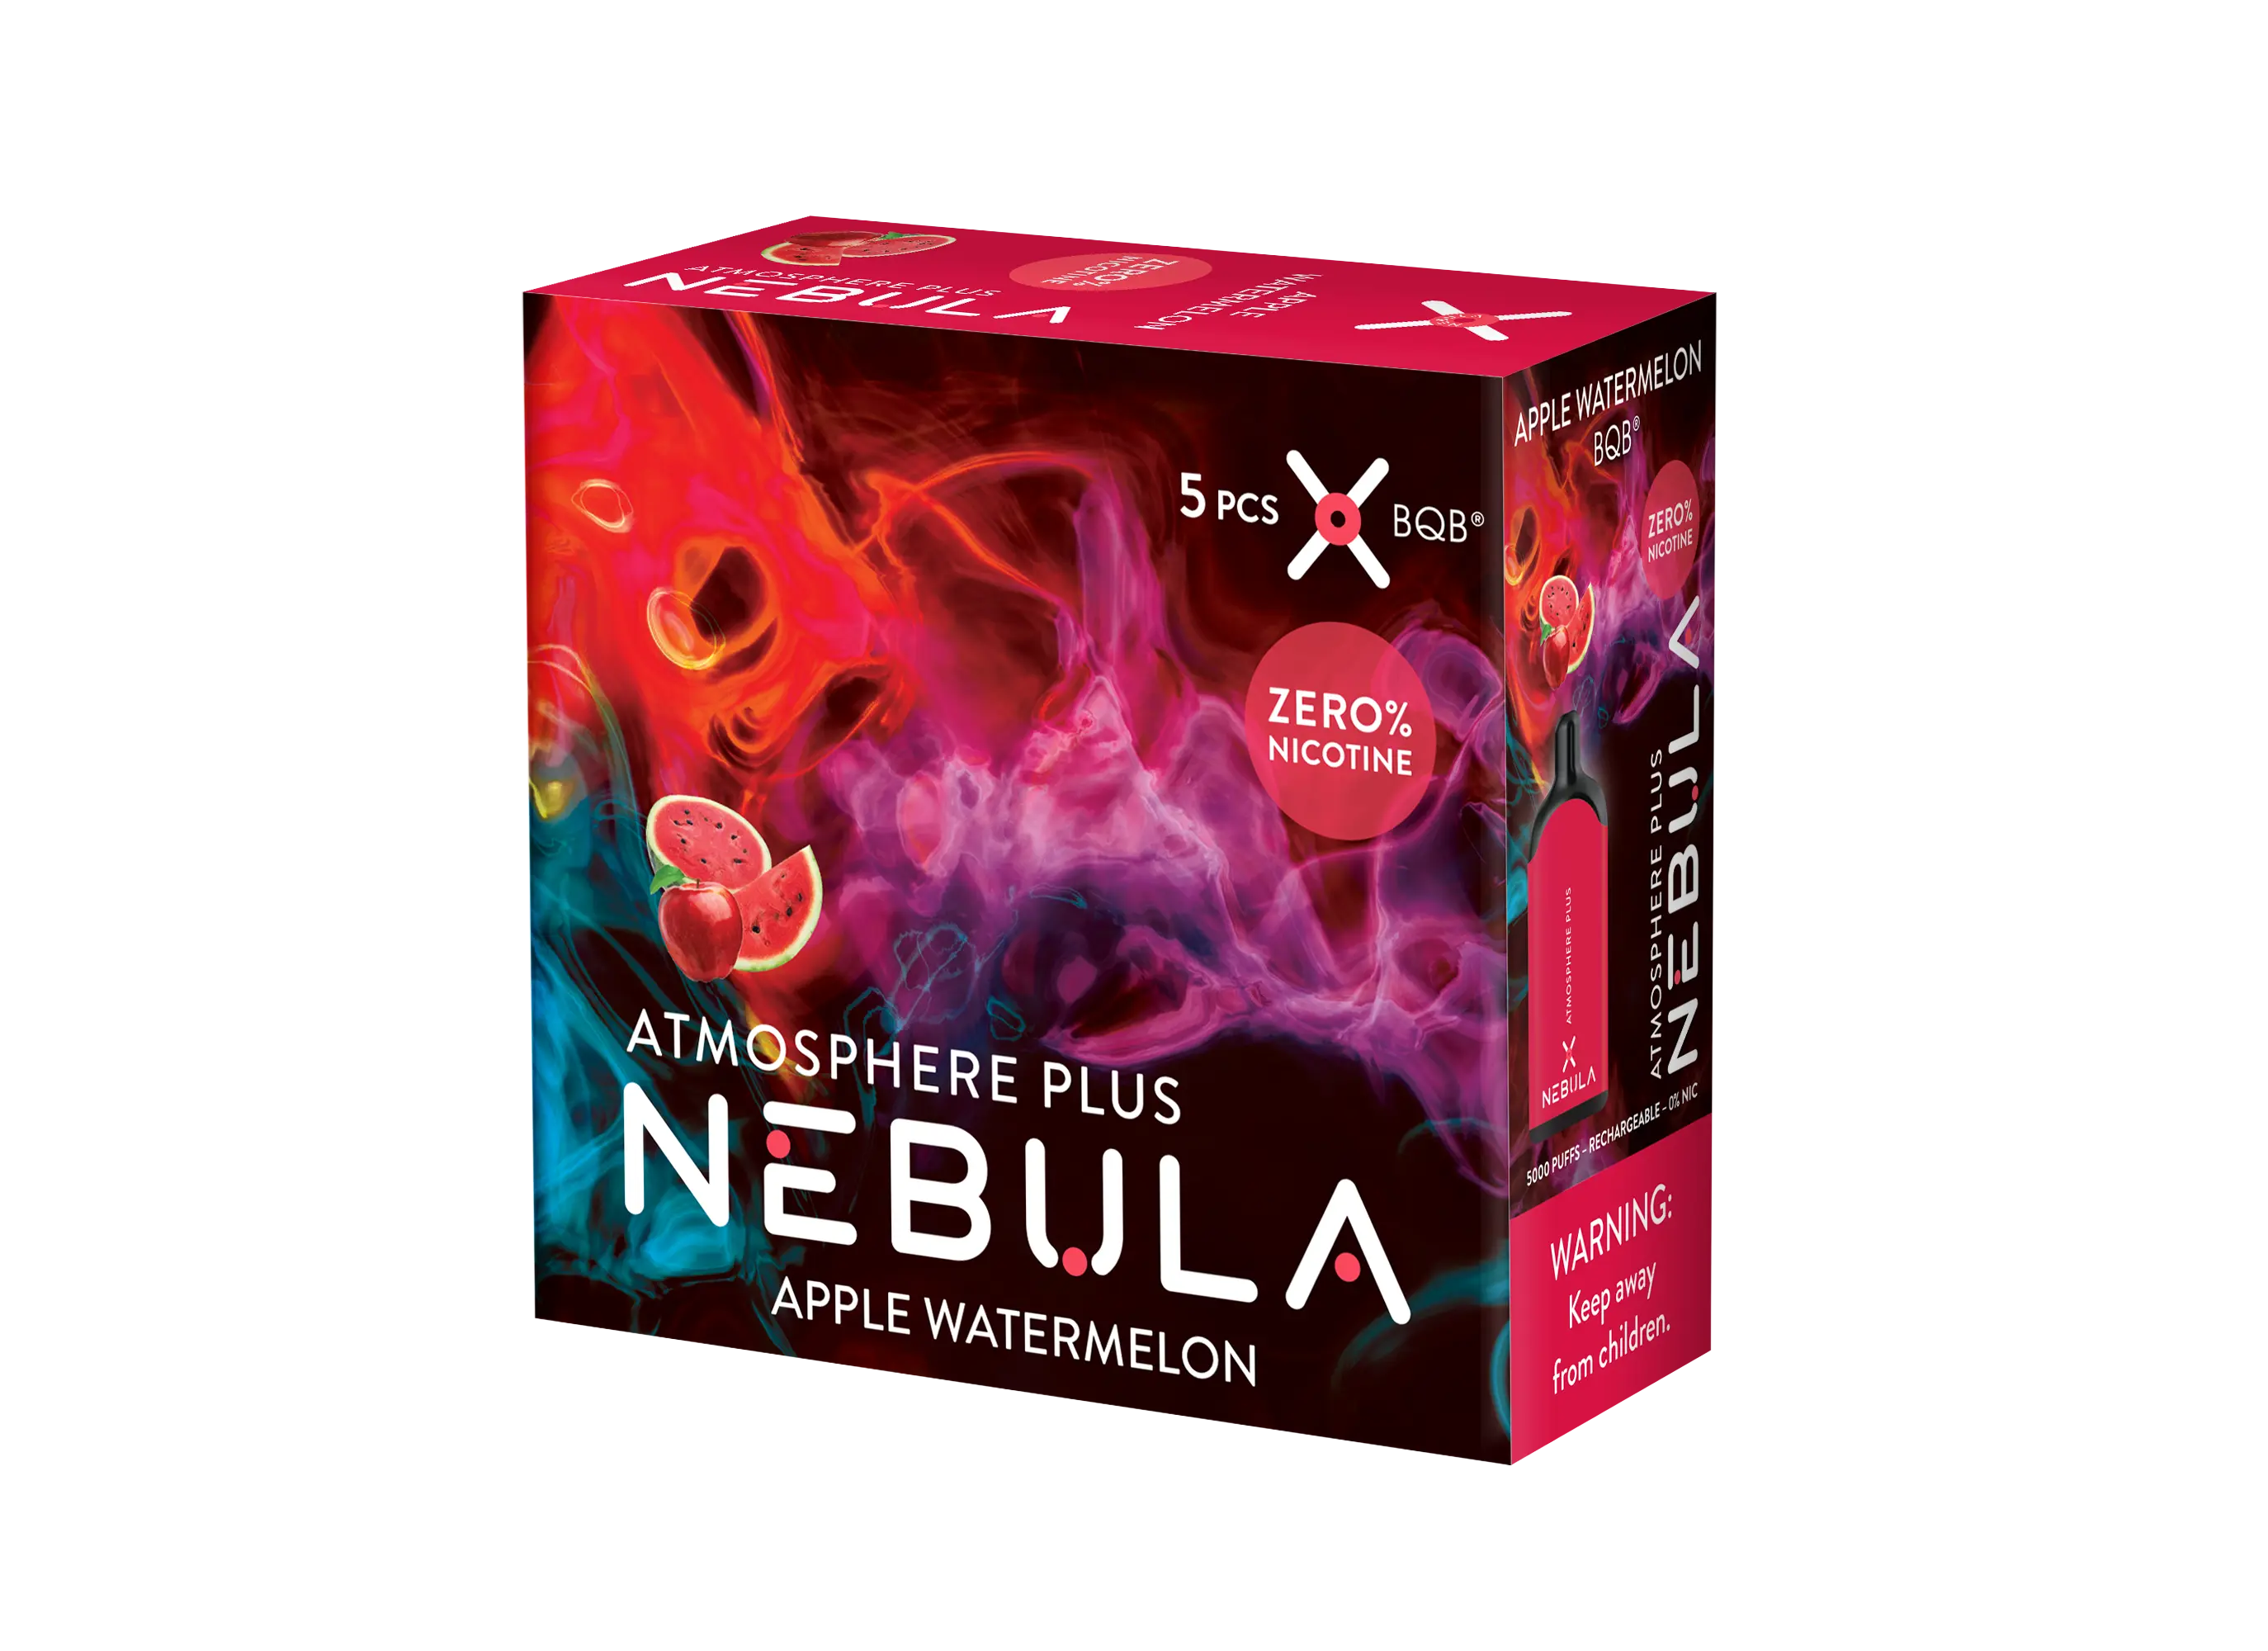 Nebula Atmosphere Plus 0% 5000 Puffs - Apple Watermelon - B2B Nebula